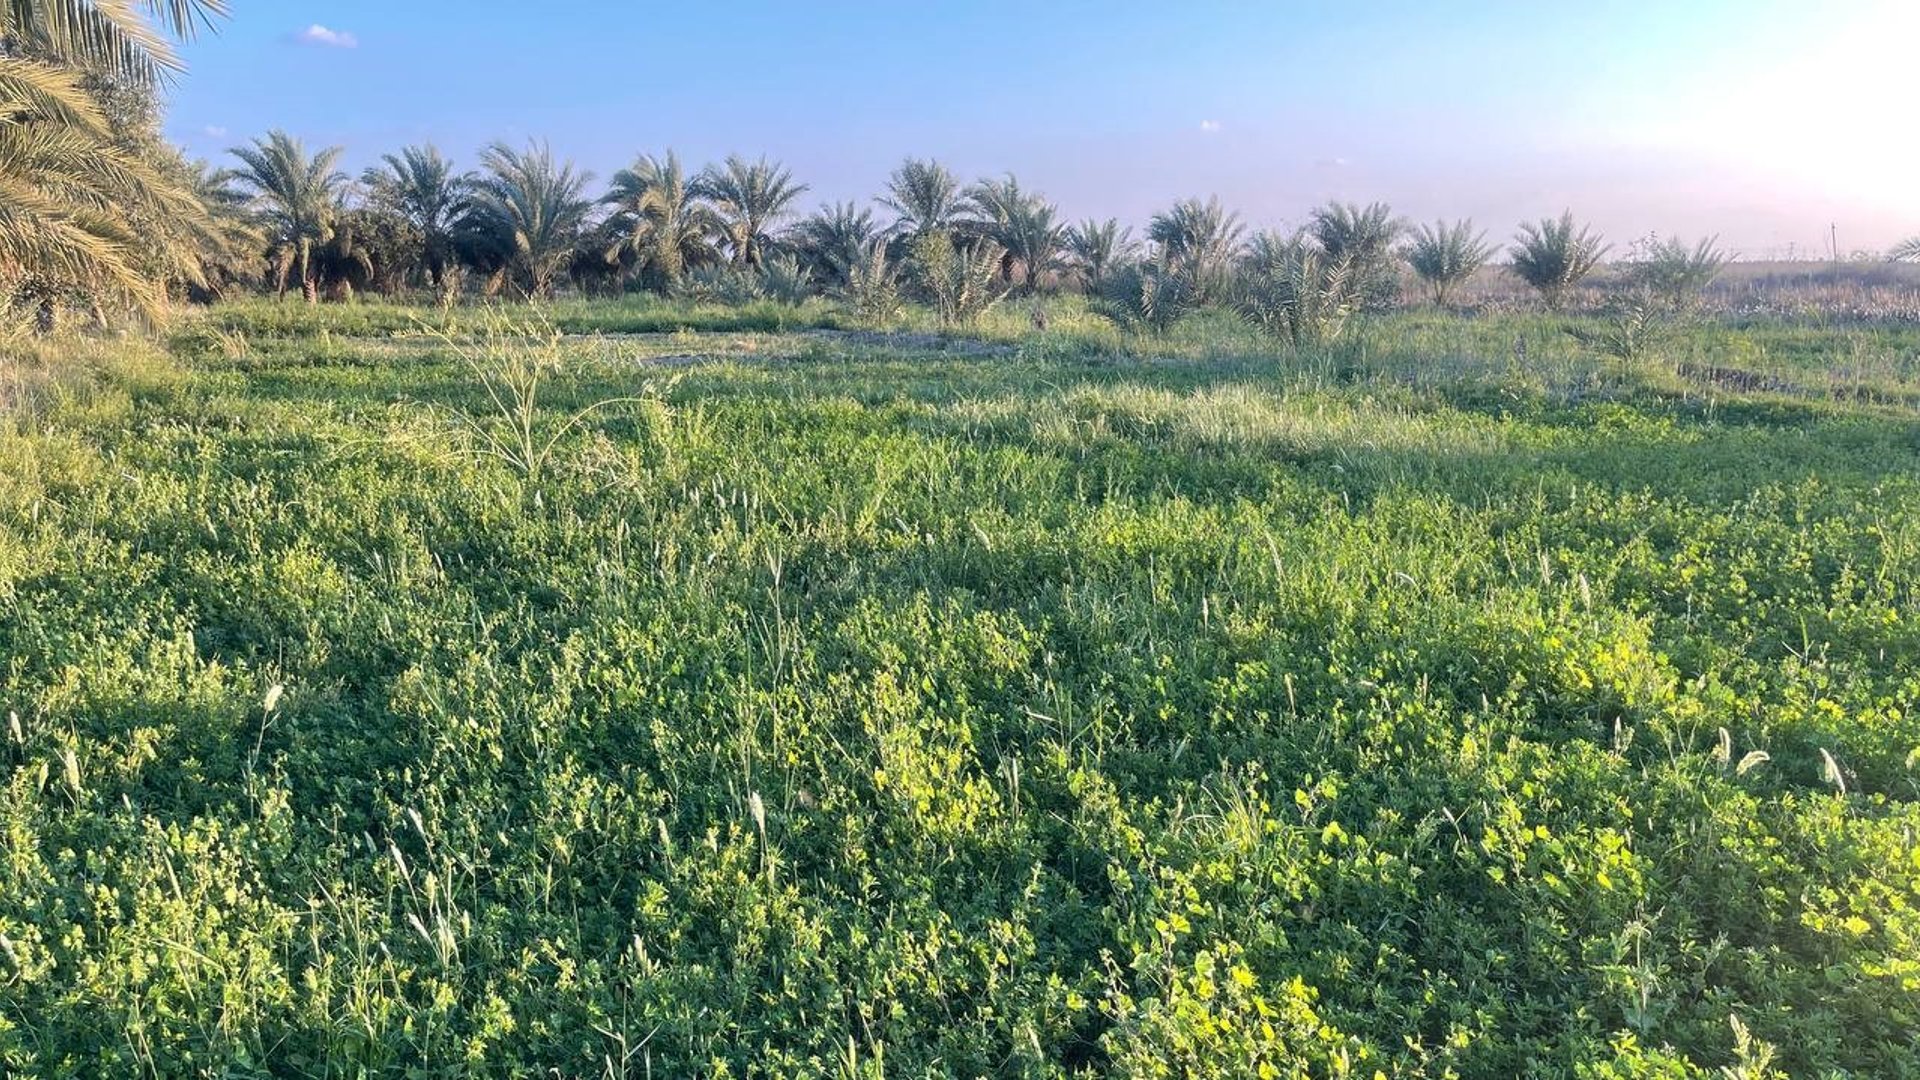 مزارعو شمالي البصرة لا يزرعون الكرفس والريحان.. “جت” المواشي مربح أكثر »  +964